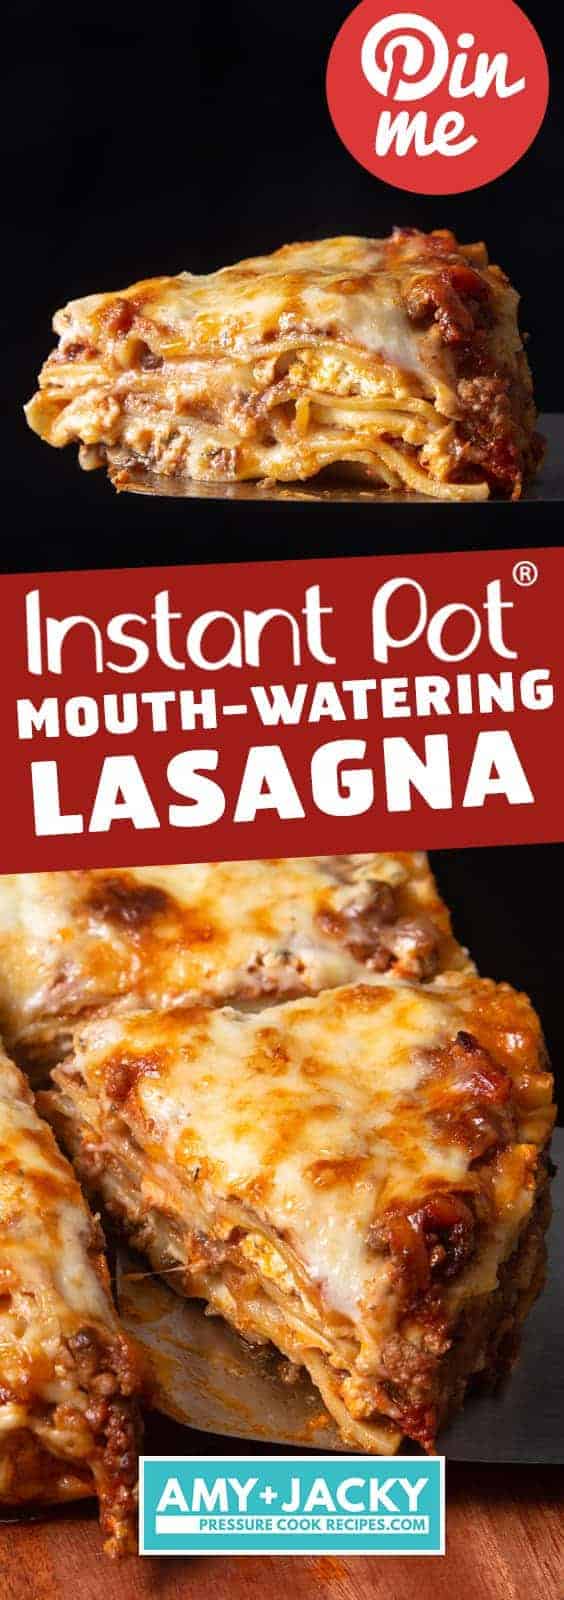 Instant Pot Lasagna | Pressure Cooker Lasagna | Instapot Lasagna | Lasagna Recipes | Instant Pot Ground Beef | Instant Pot Pasta | Instant Pot Recipes #instantpot #pressurecooker #groundbeef #beef #easy #dinner